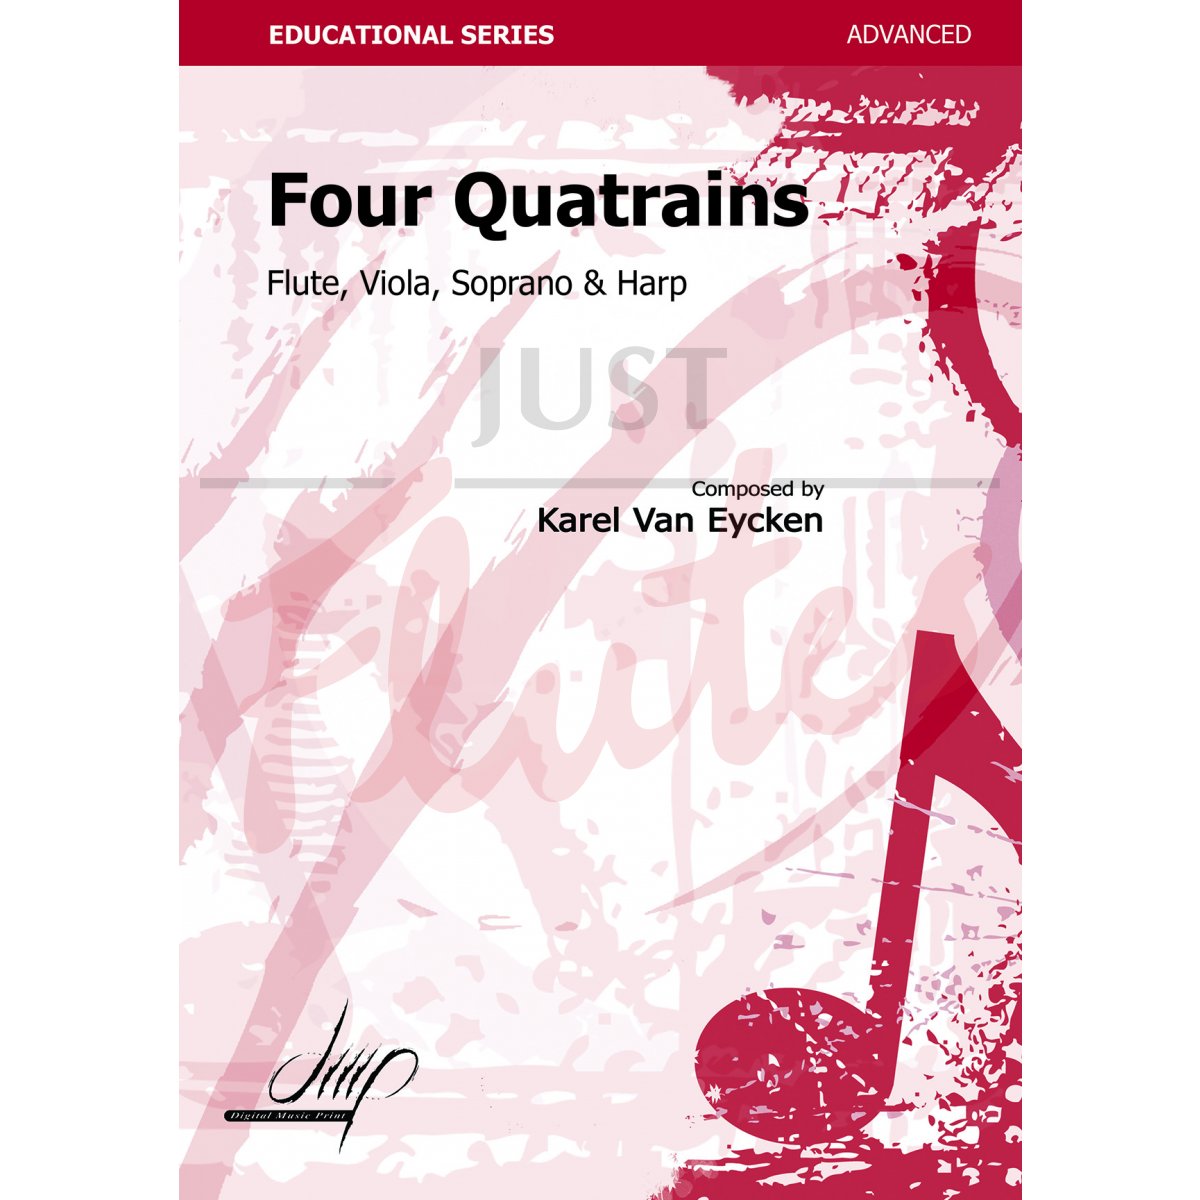 Four Quatrains